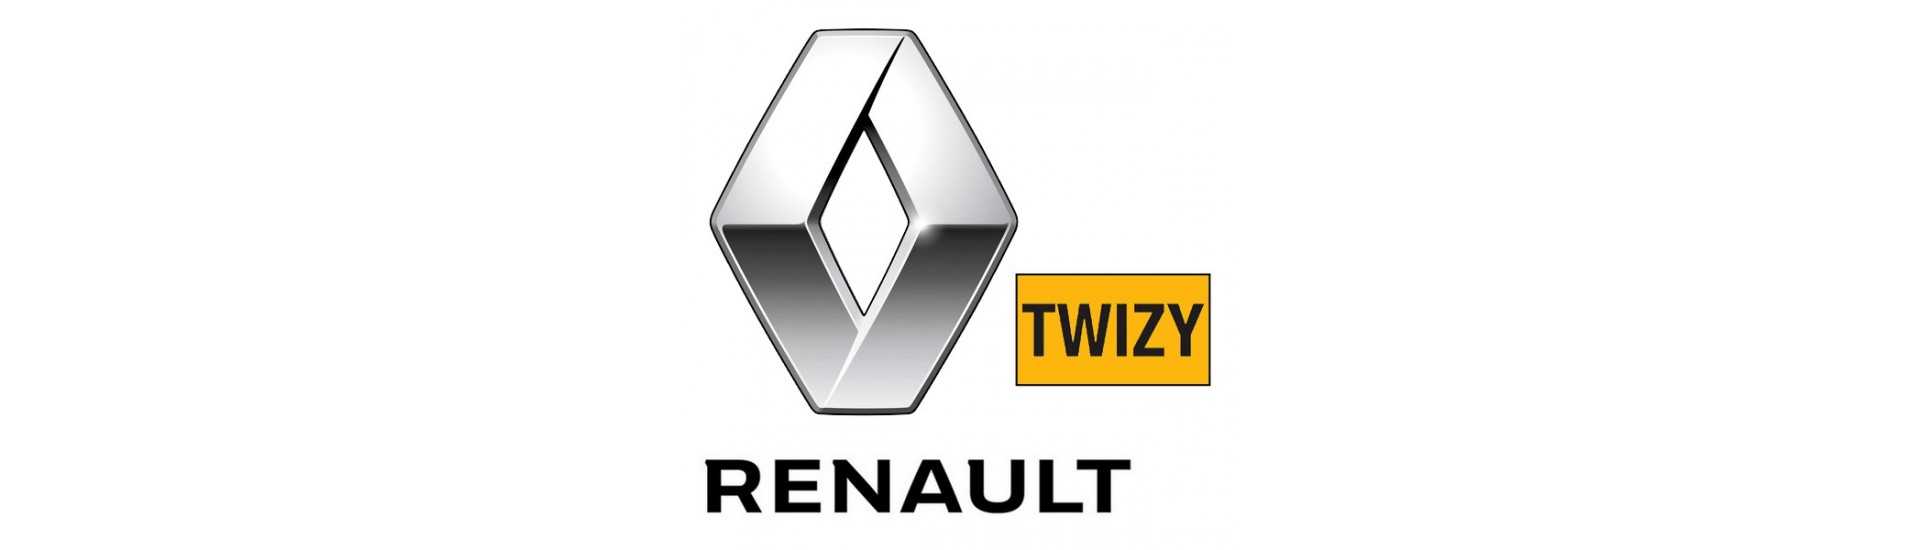 Cubo da porta ao melhor preço para o carro sem uma permissão Renault Twizy